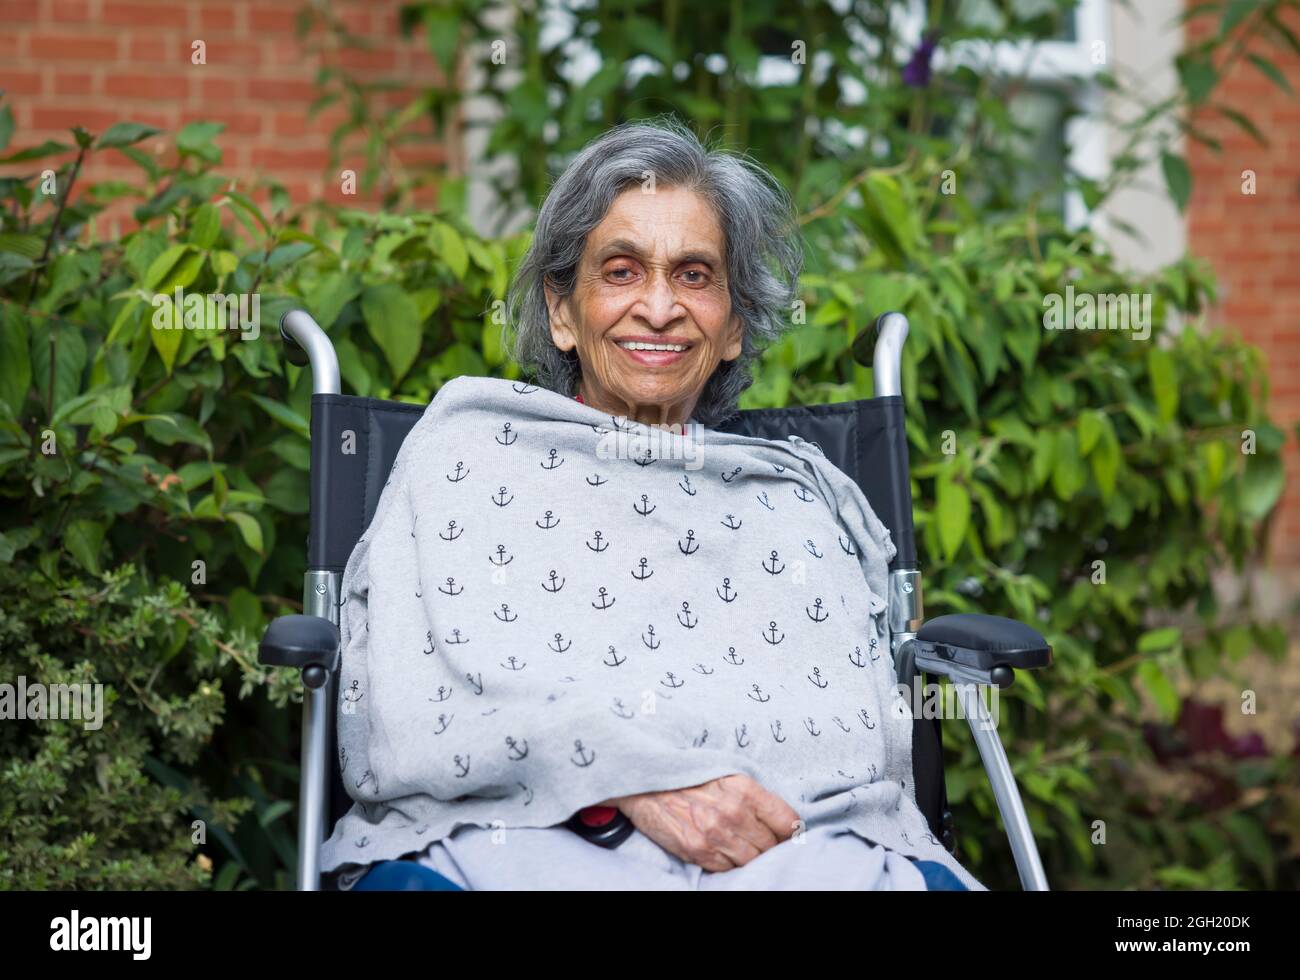 Ältere asiatische indische Frau, die lächelnd in einem Rollstuhl in einem Pflegeheim, Pflegeheim oder Garten sitzt, Großbritannien. Zeigt die Gesundheitsversorgung im Ruhestand und Alter Stockfoto